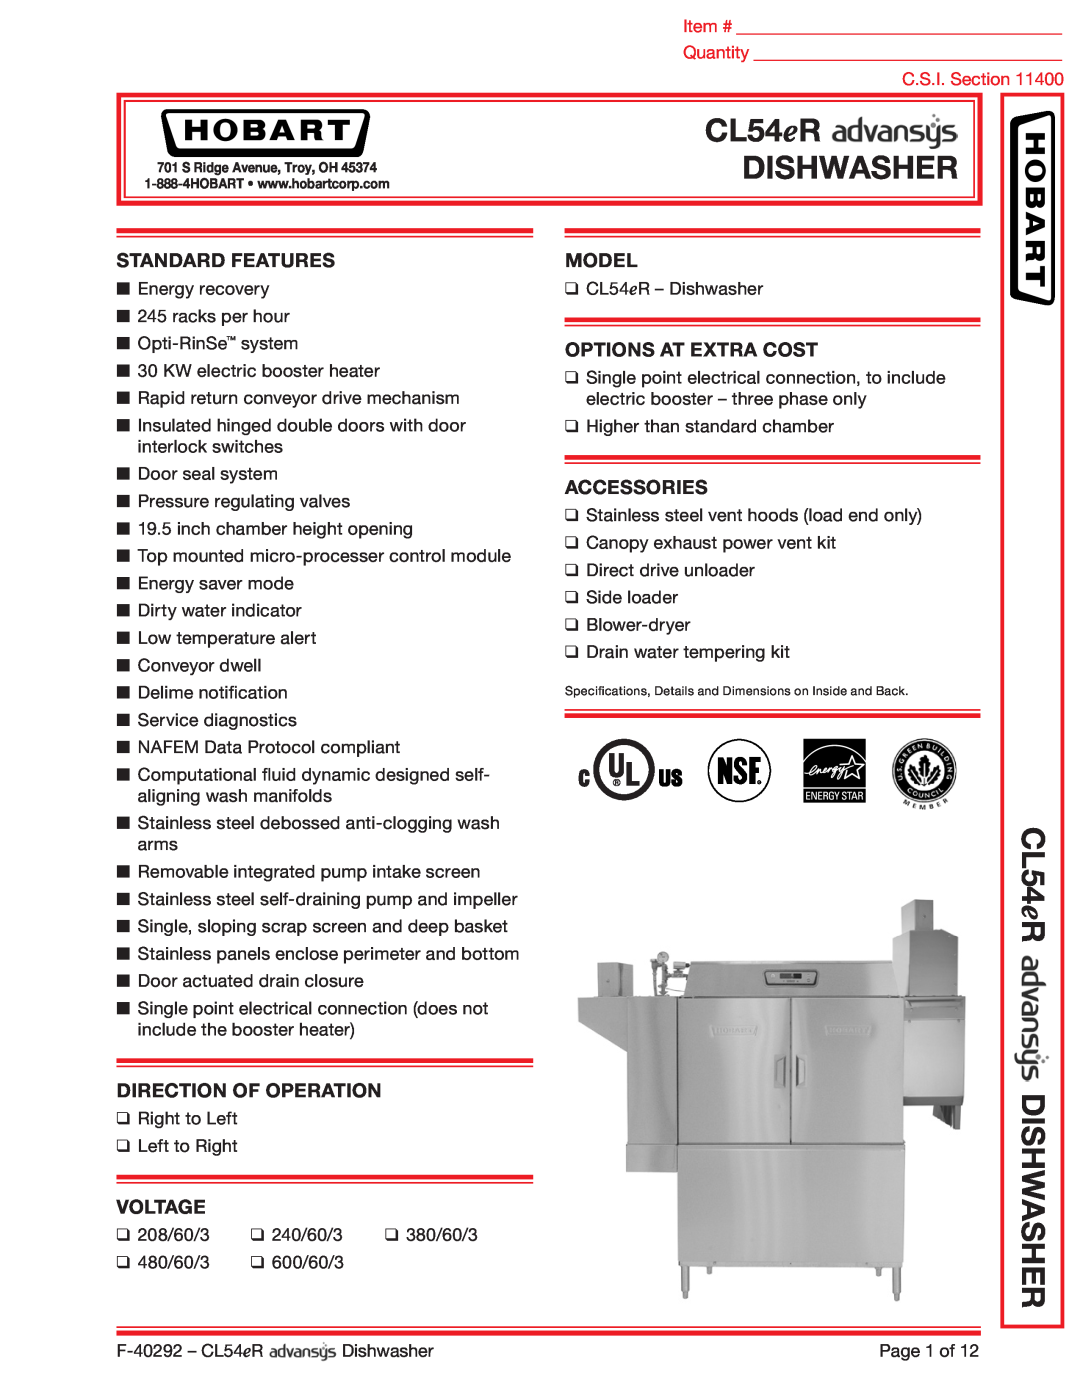 Hobart CL54ER dimensions Dishwasher, CL54eR DISHWASHER, Standard Features, Direction Of Operation, Voltage, Model 